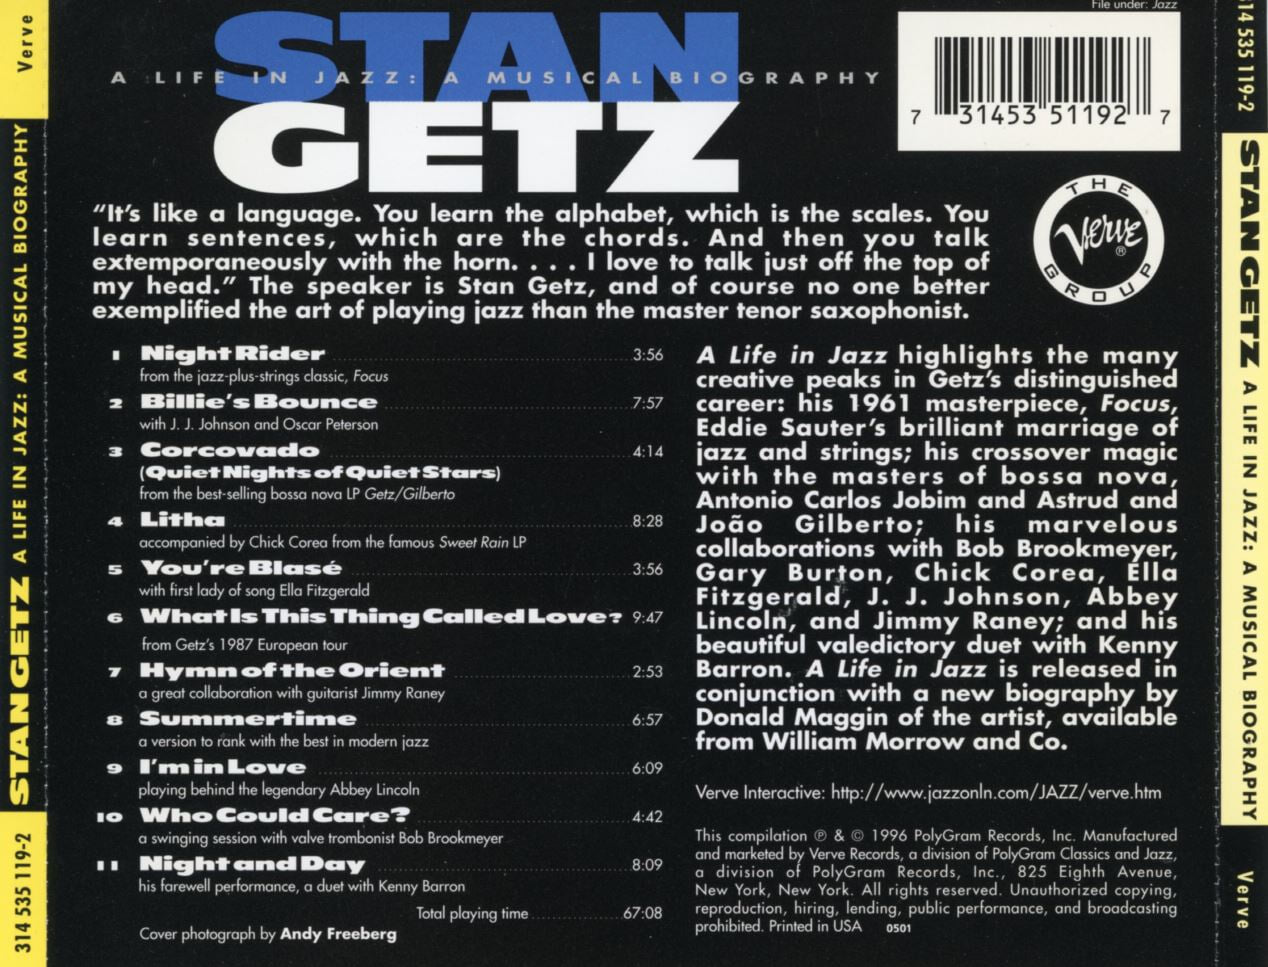 스탄 게츠 - Stan Getz - A Life In Jazz A Musical Biography [U.S발매]